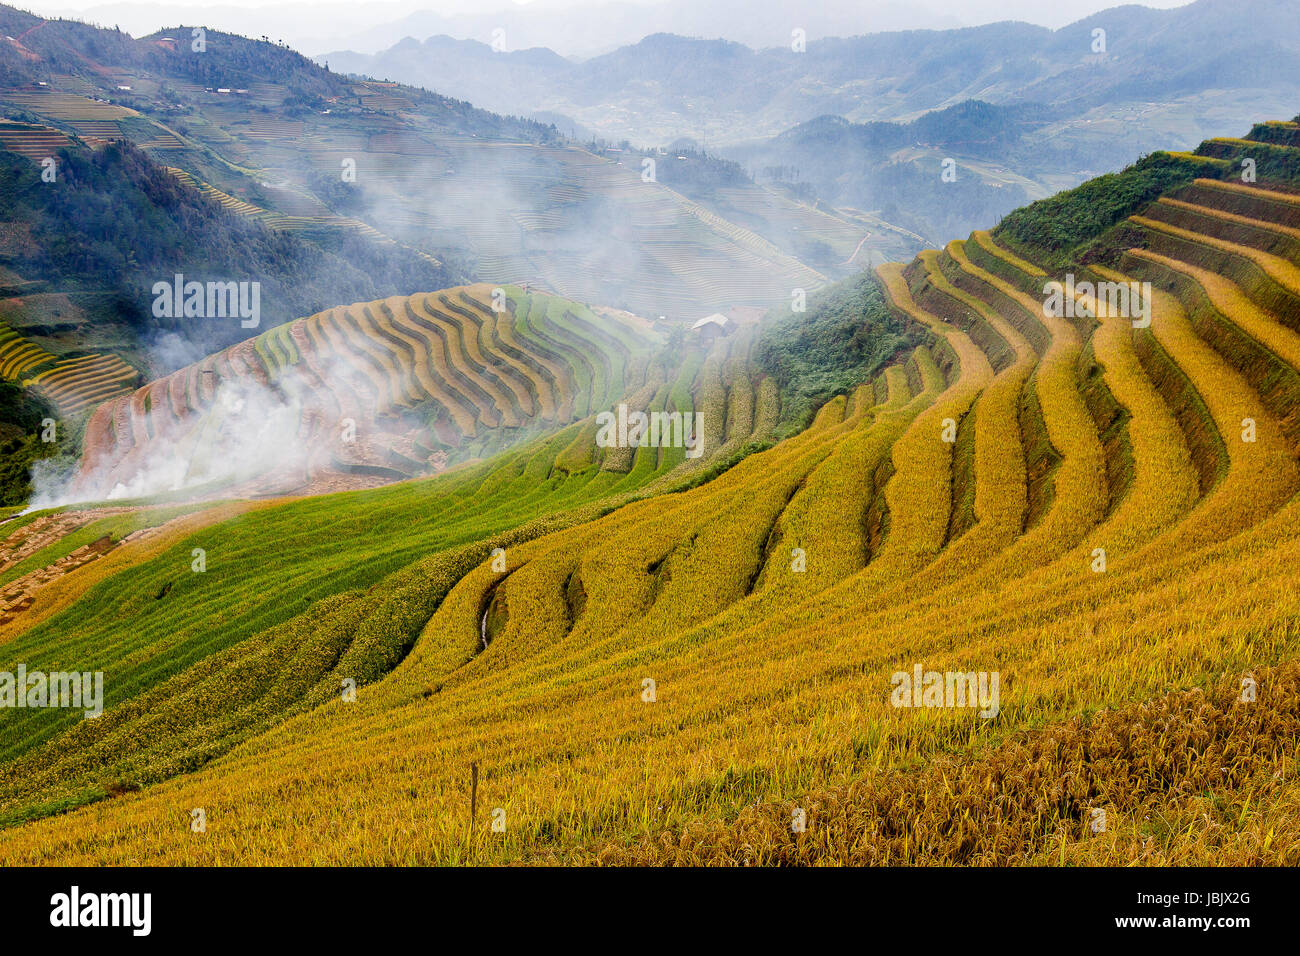 Le Viet Nam Mu Cang Chai rizières en terrasses sur la saison des récoltes ou golden season y compris de colline montagne montagnes et la texture de la courbe Banque D'Images